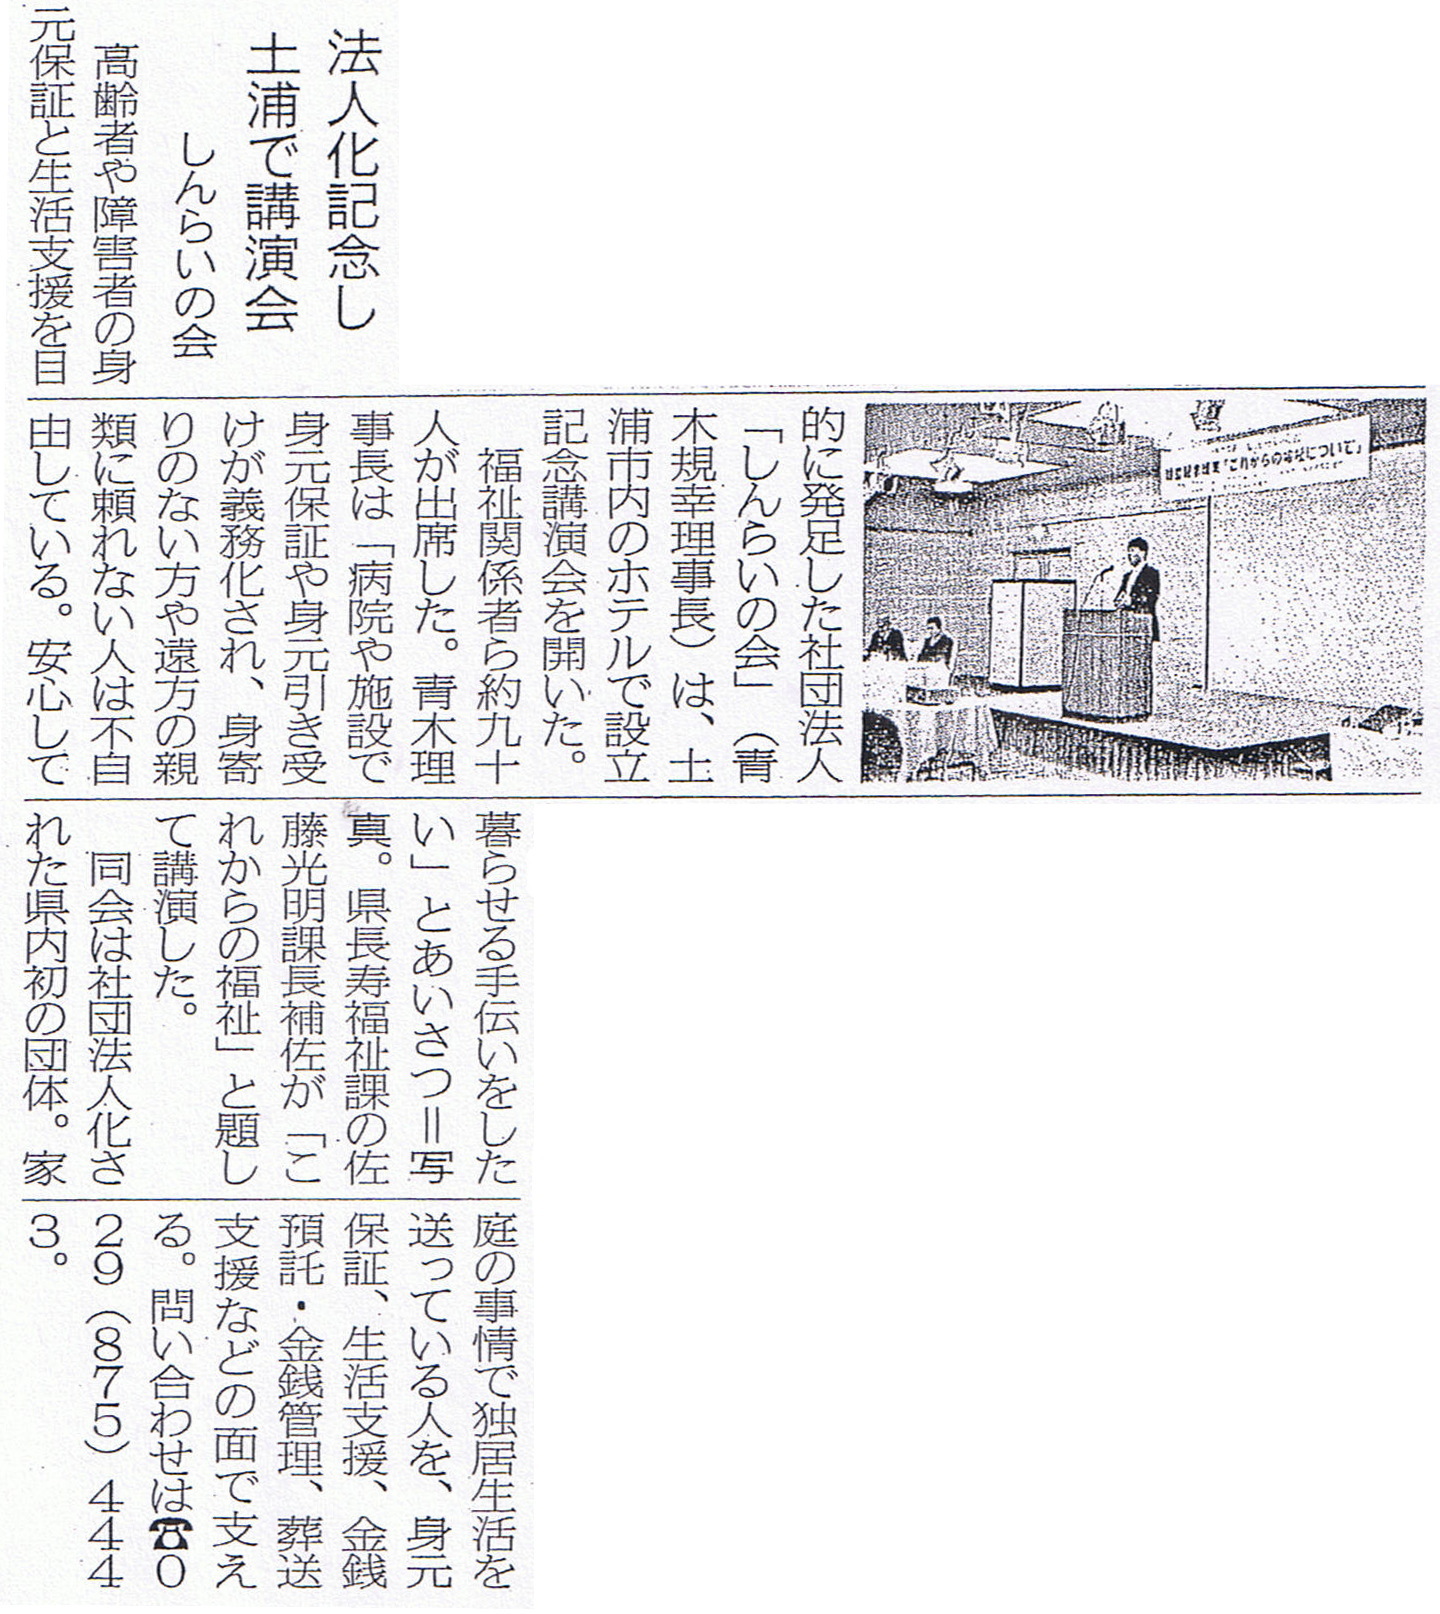 法人化し土浦で講演会をするしんらいの会　茨城新聞掲載 2009年4月9日